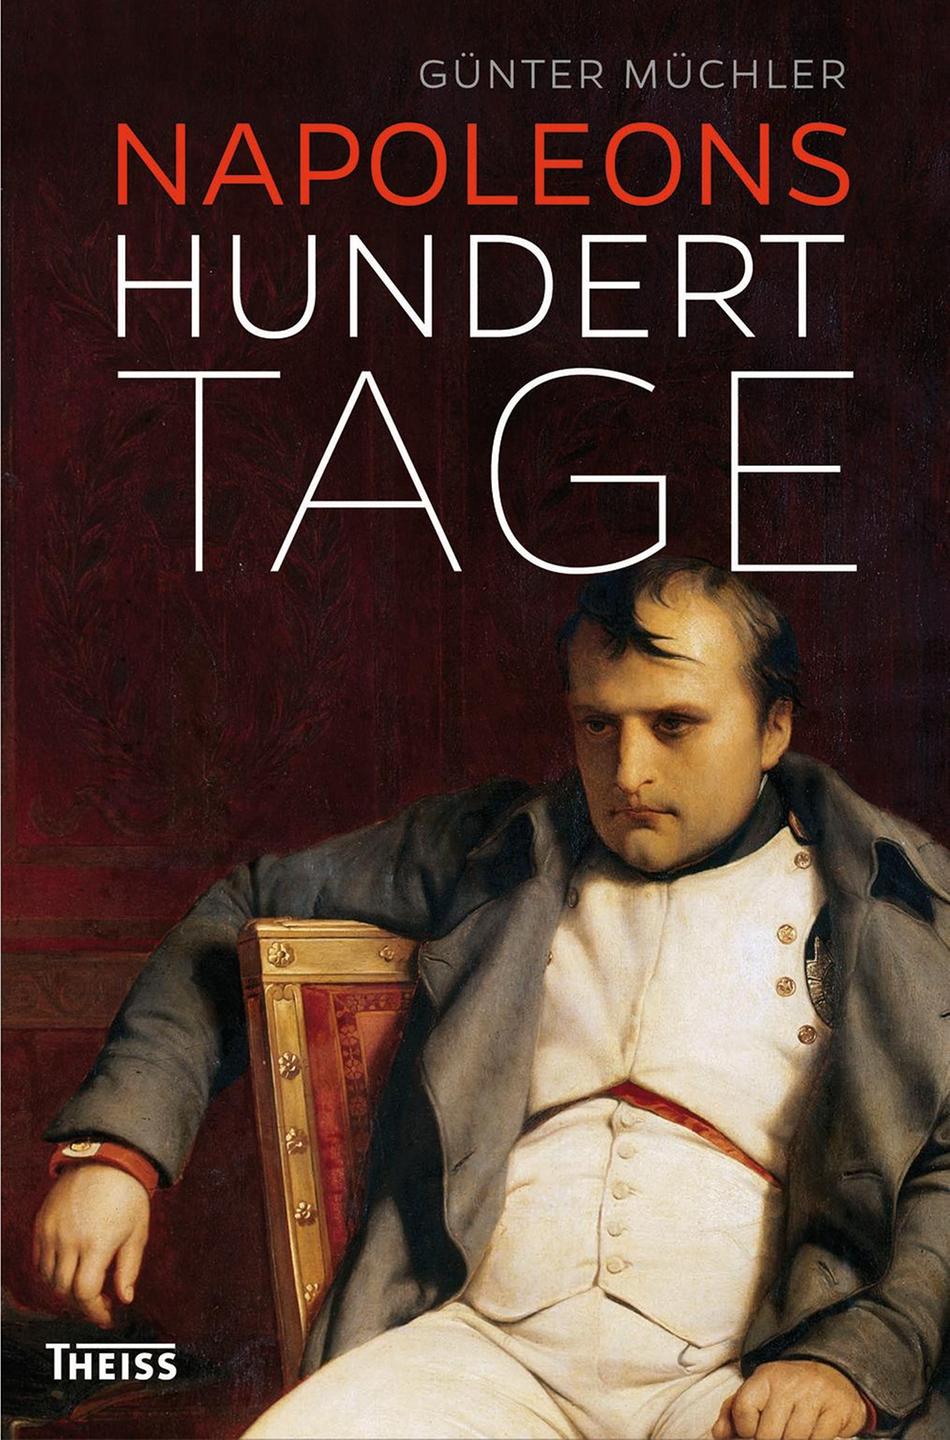 Lesart-Cover: Günter Müchler "Napoleons hundert Tage"